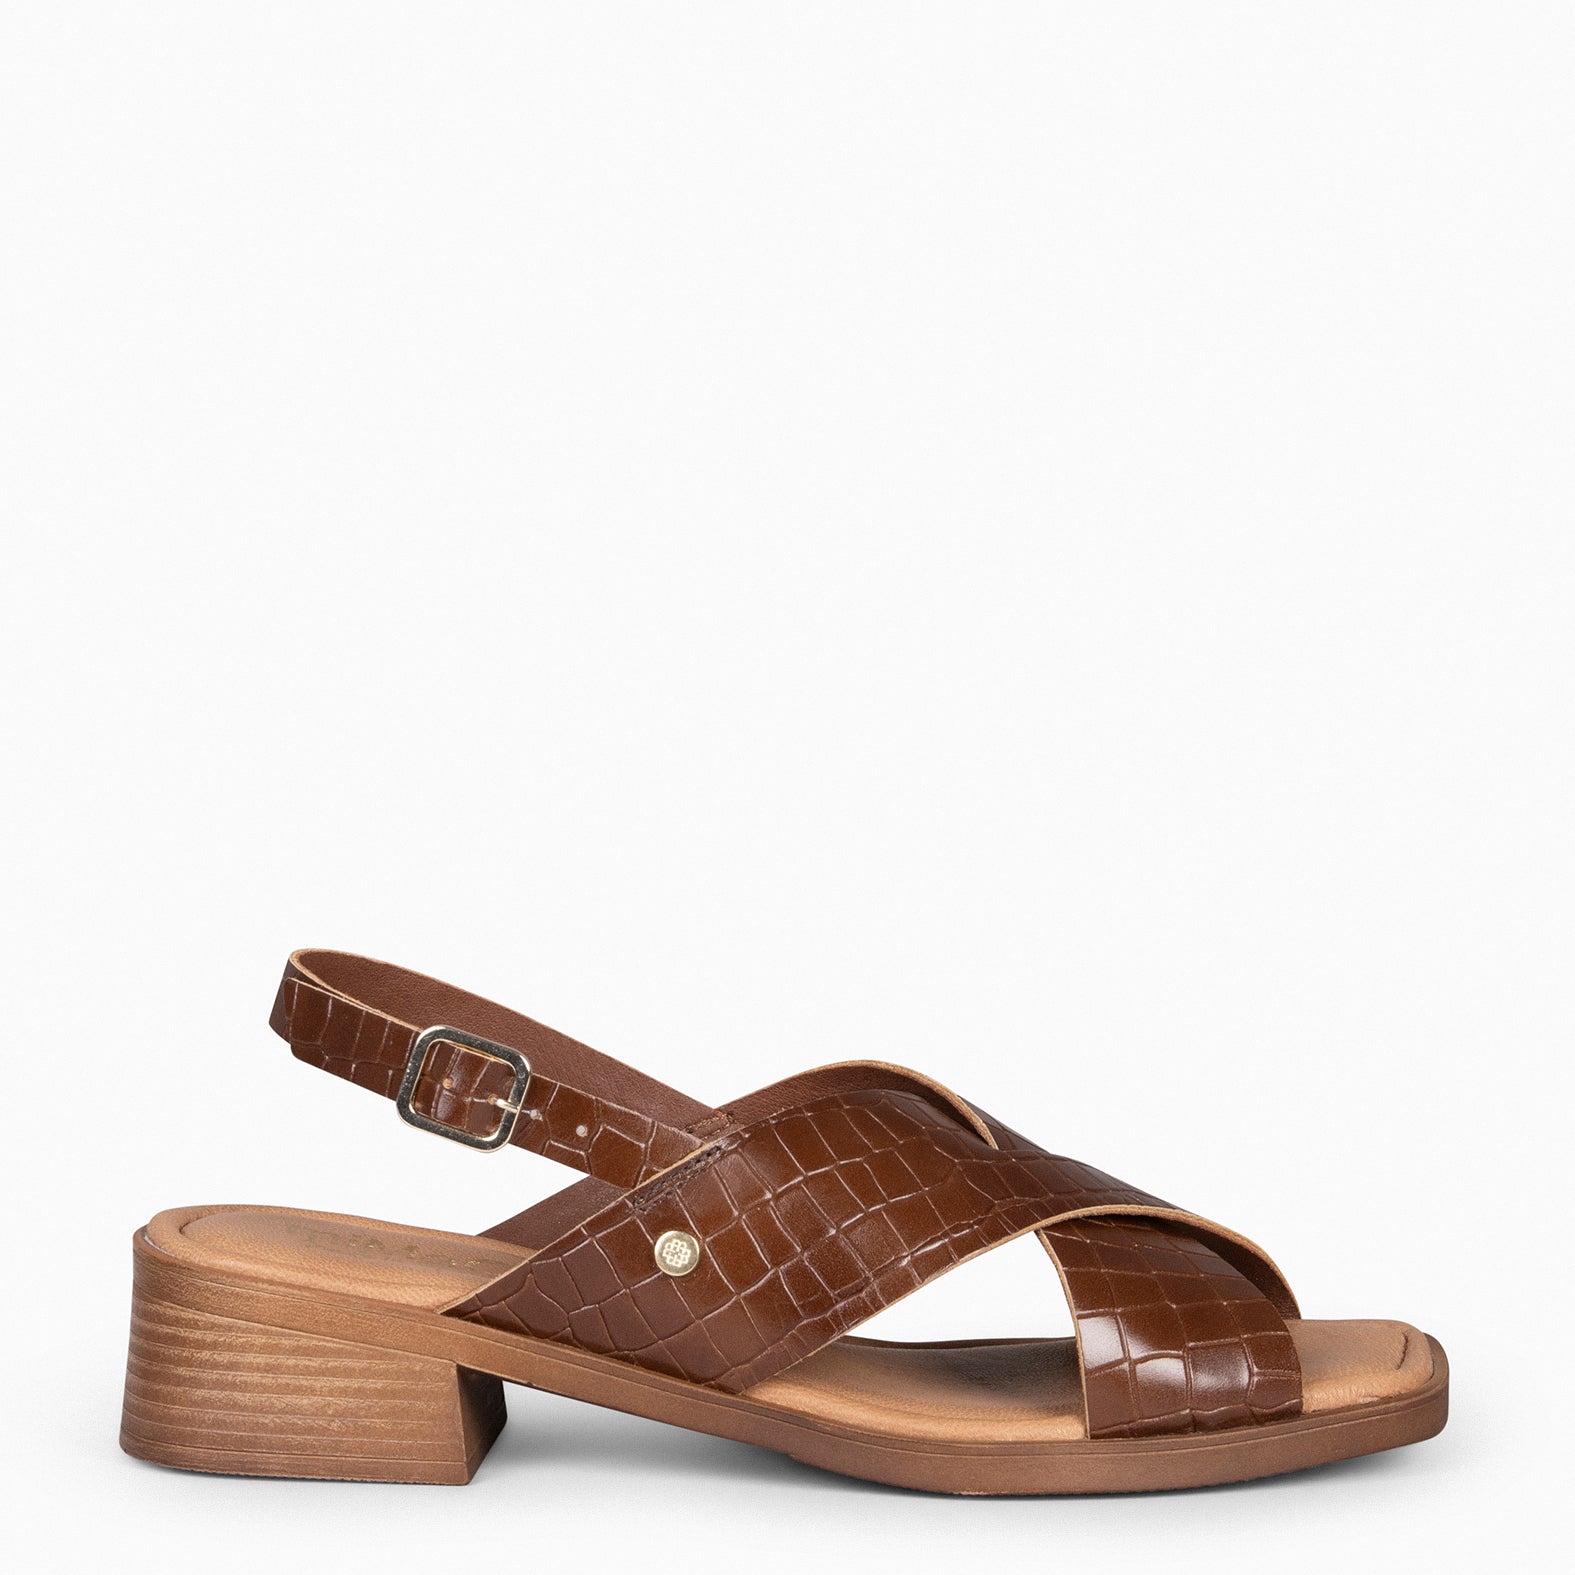 BETANIA - Sandales en cuir imitation croco MARRON